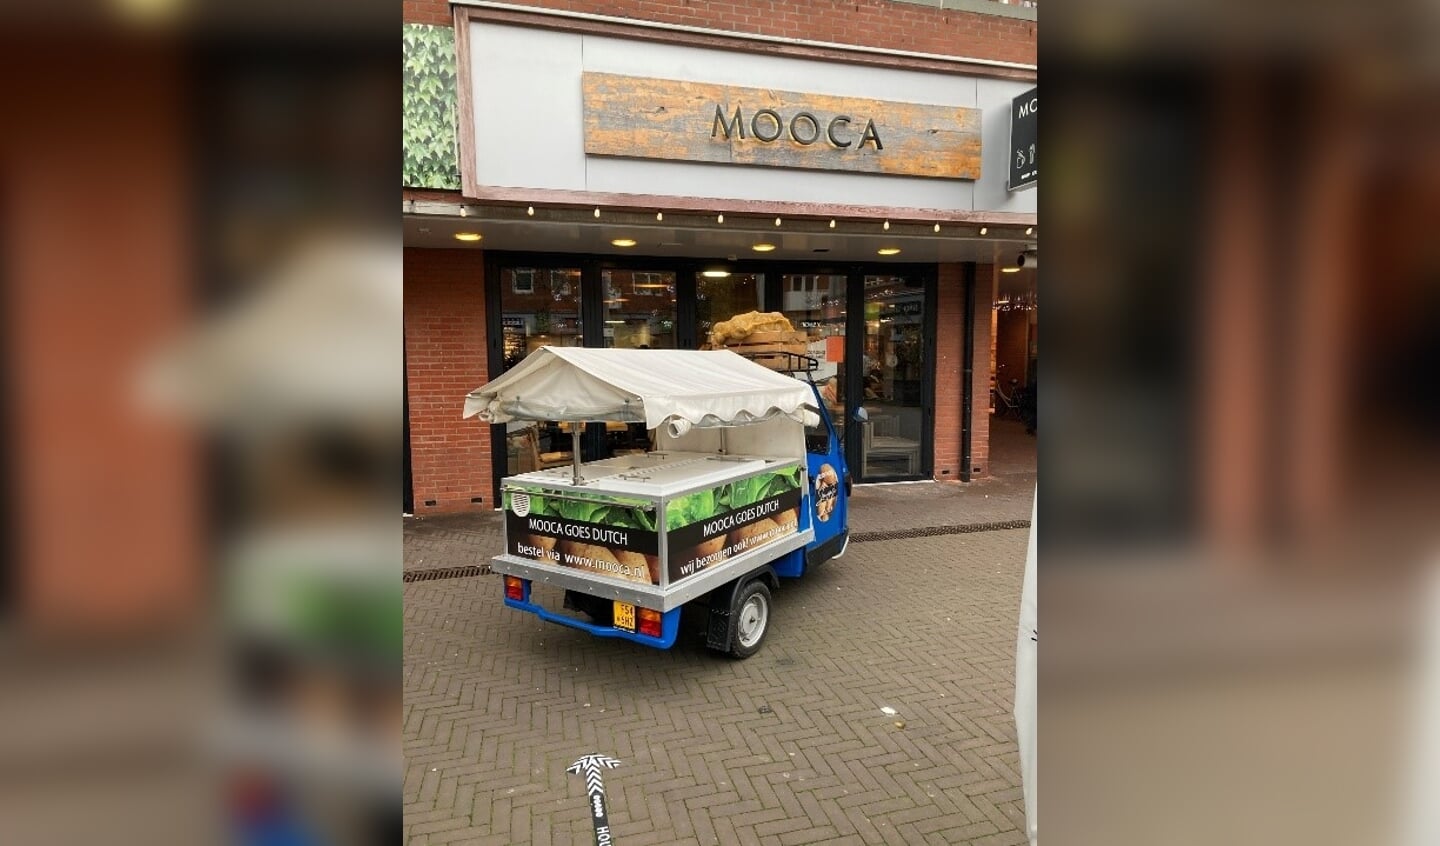 ‘Mooca is overgegaan op het maken van oer Hollandse stampotten.